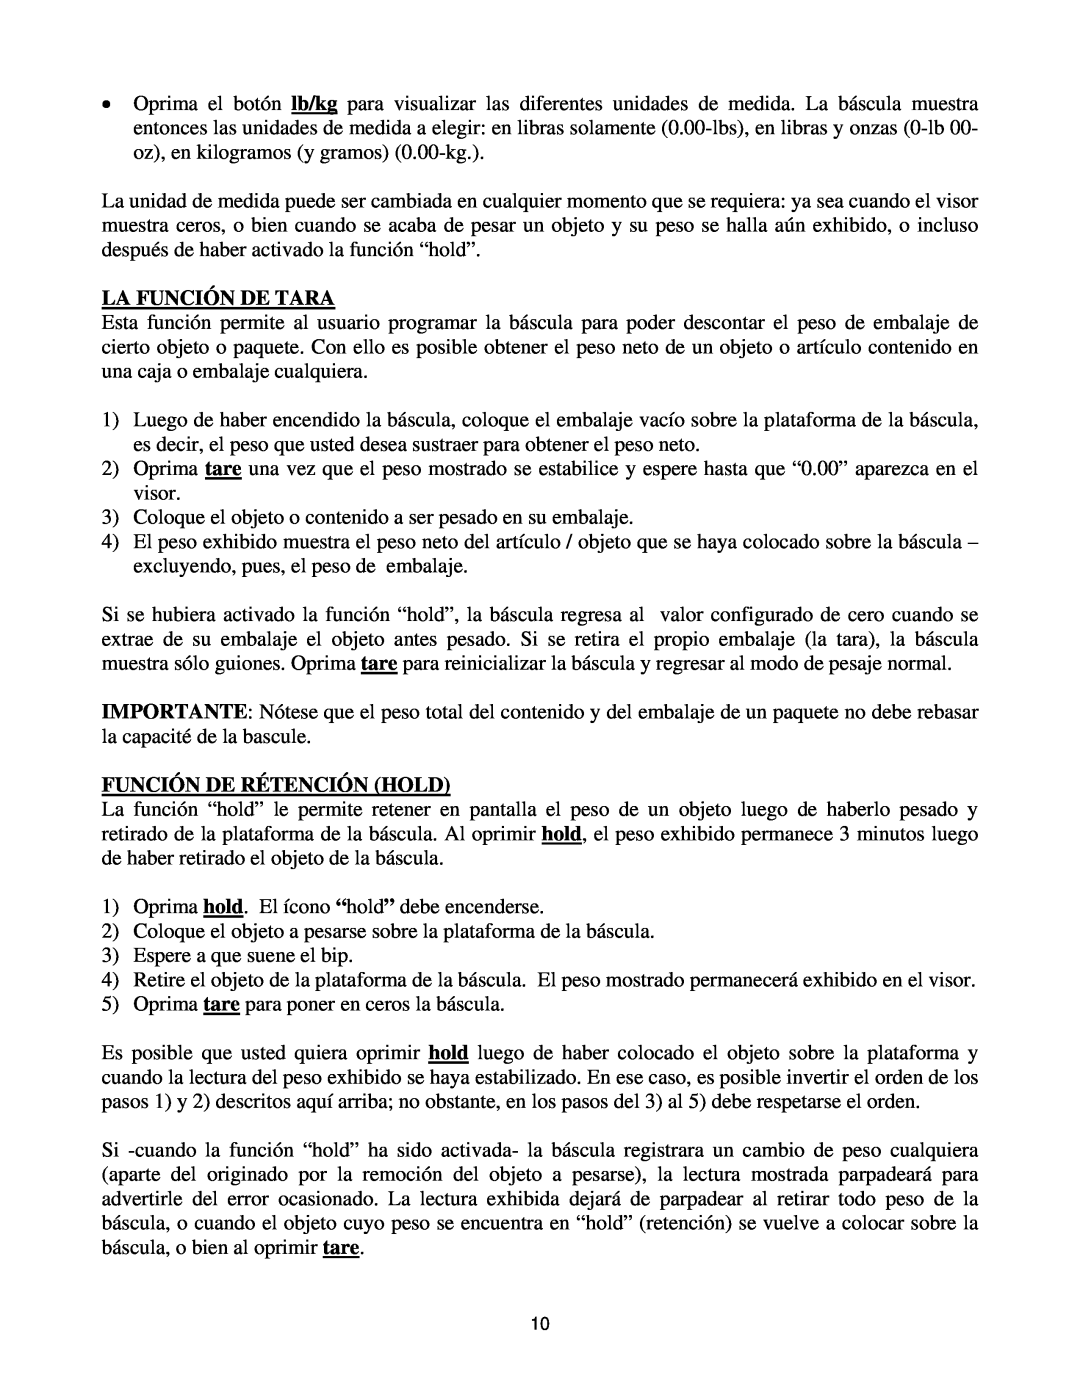 Royal Consumer Information Products eX-315w instruction manual La Función De Tara, Función De Rétención Hold 